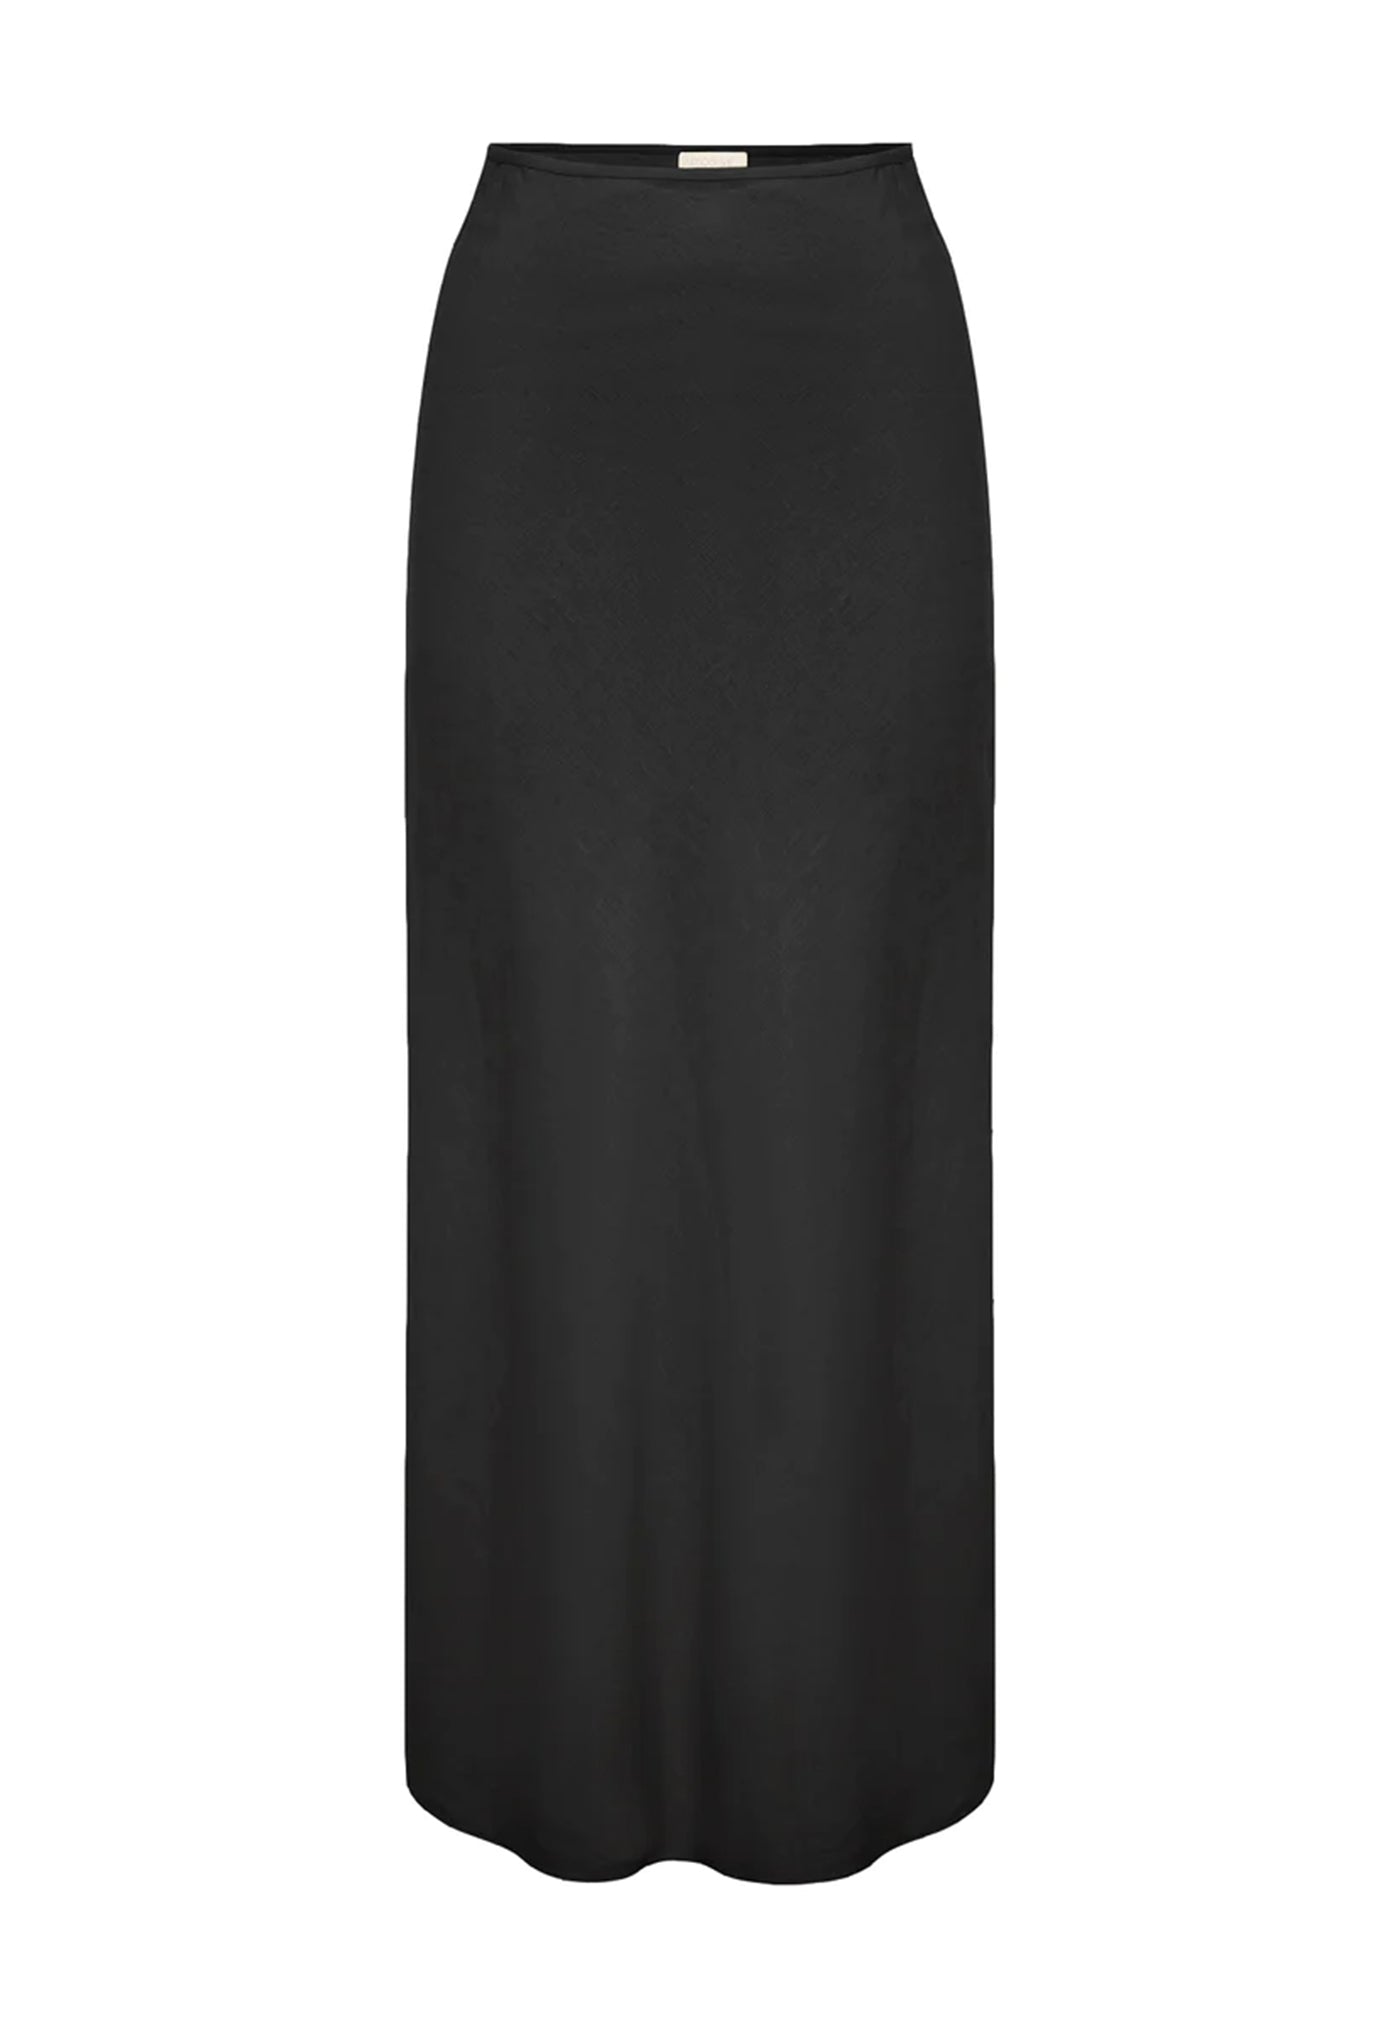 Aurora Skirt - Black sold by Angel Divine